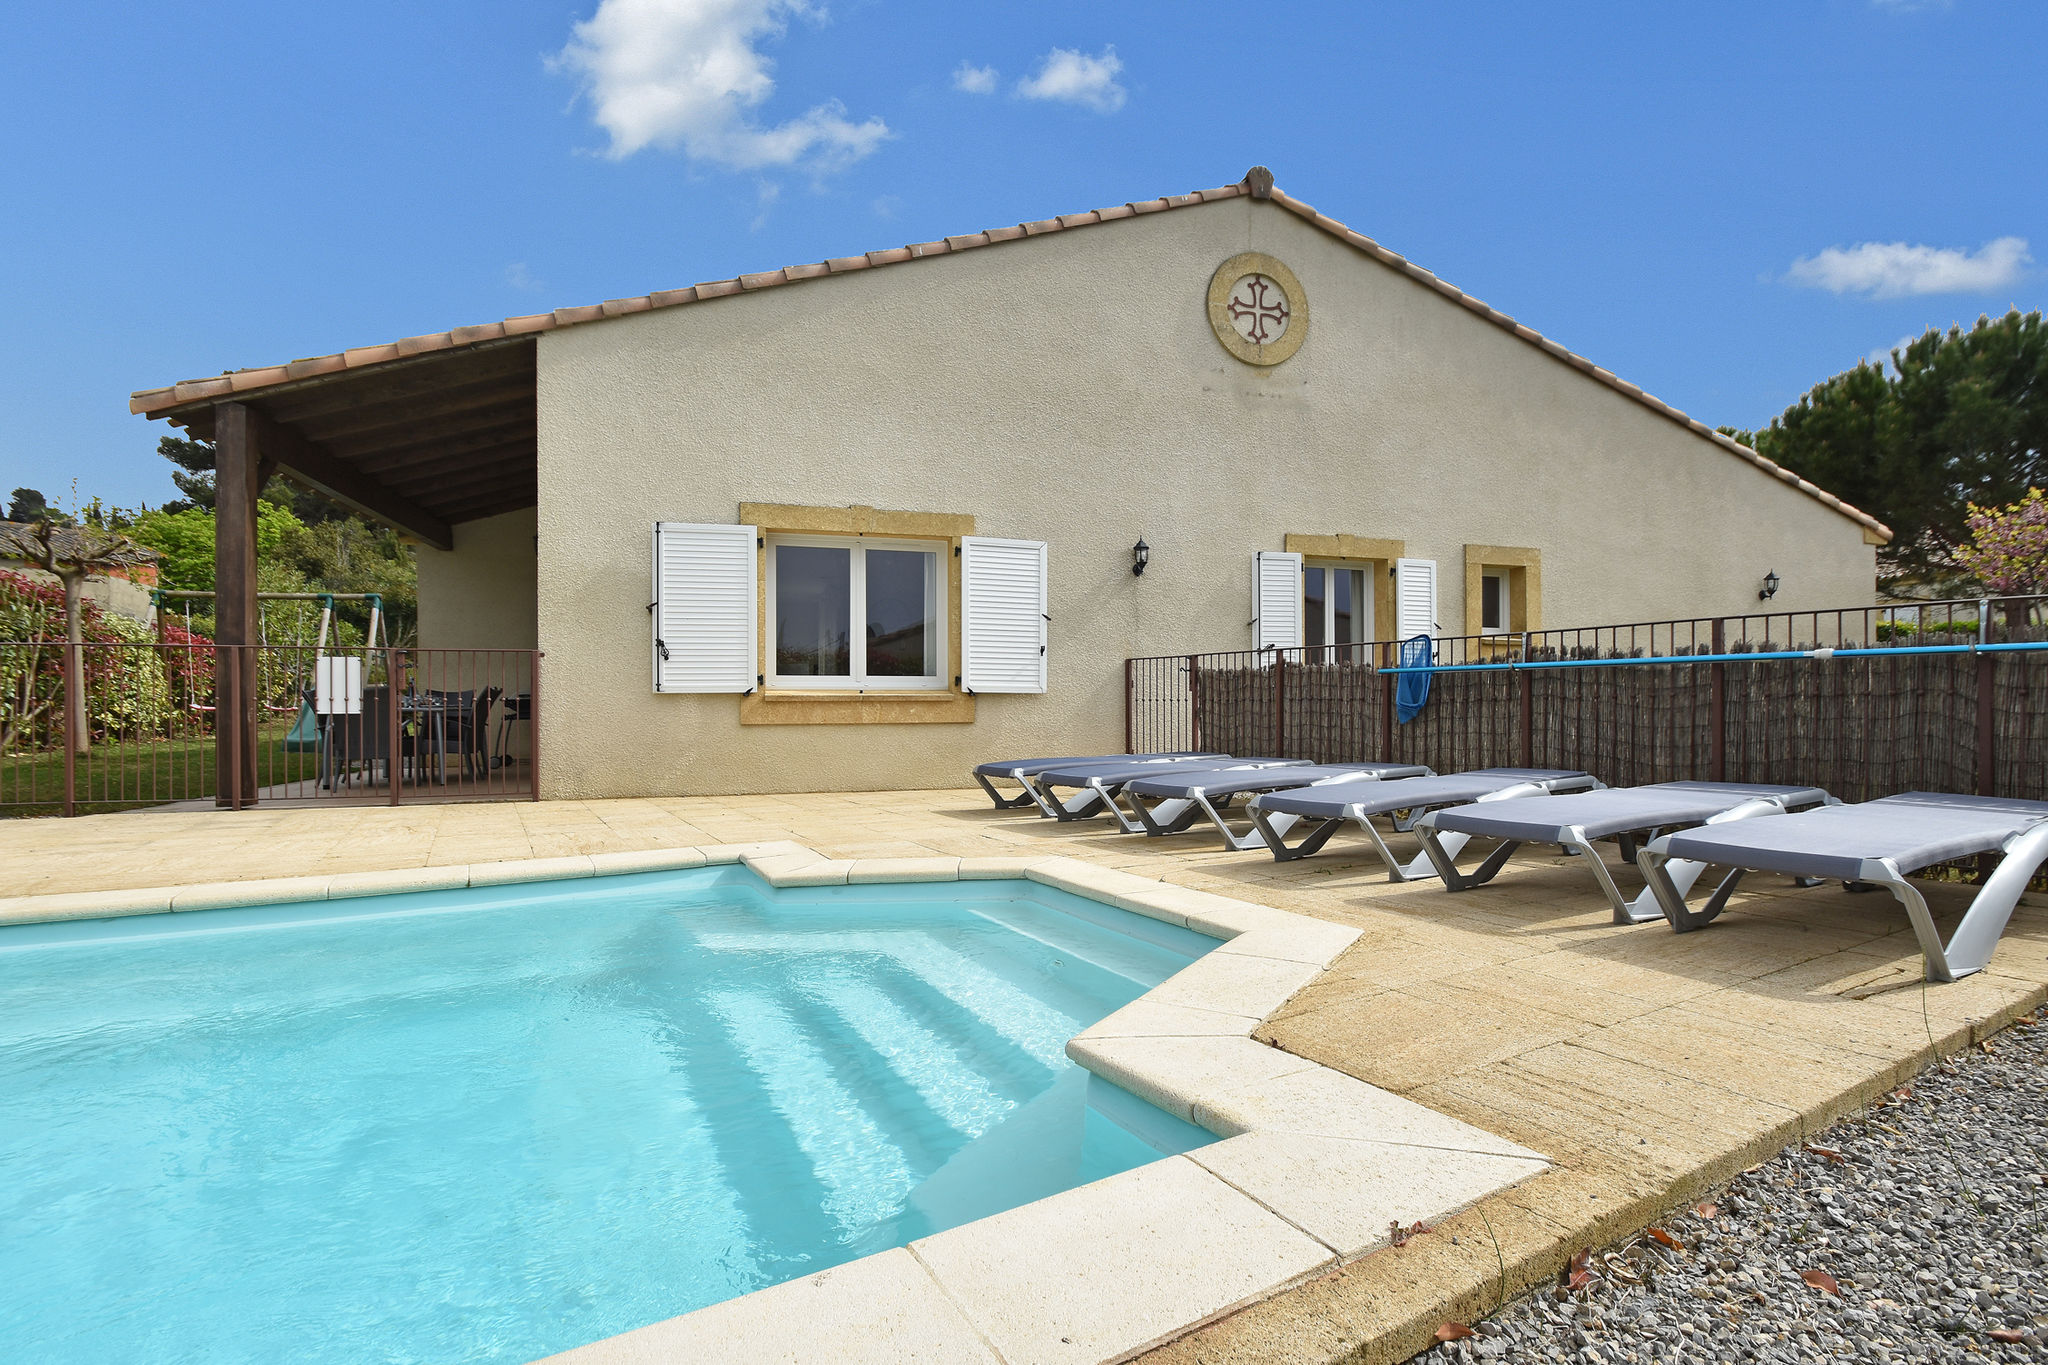 Stijlvolle vakantievilla in Zuid-Frankrijk met privézwembad